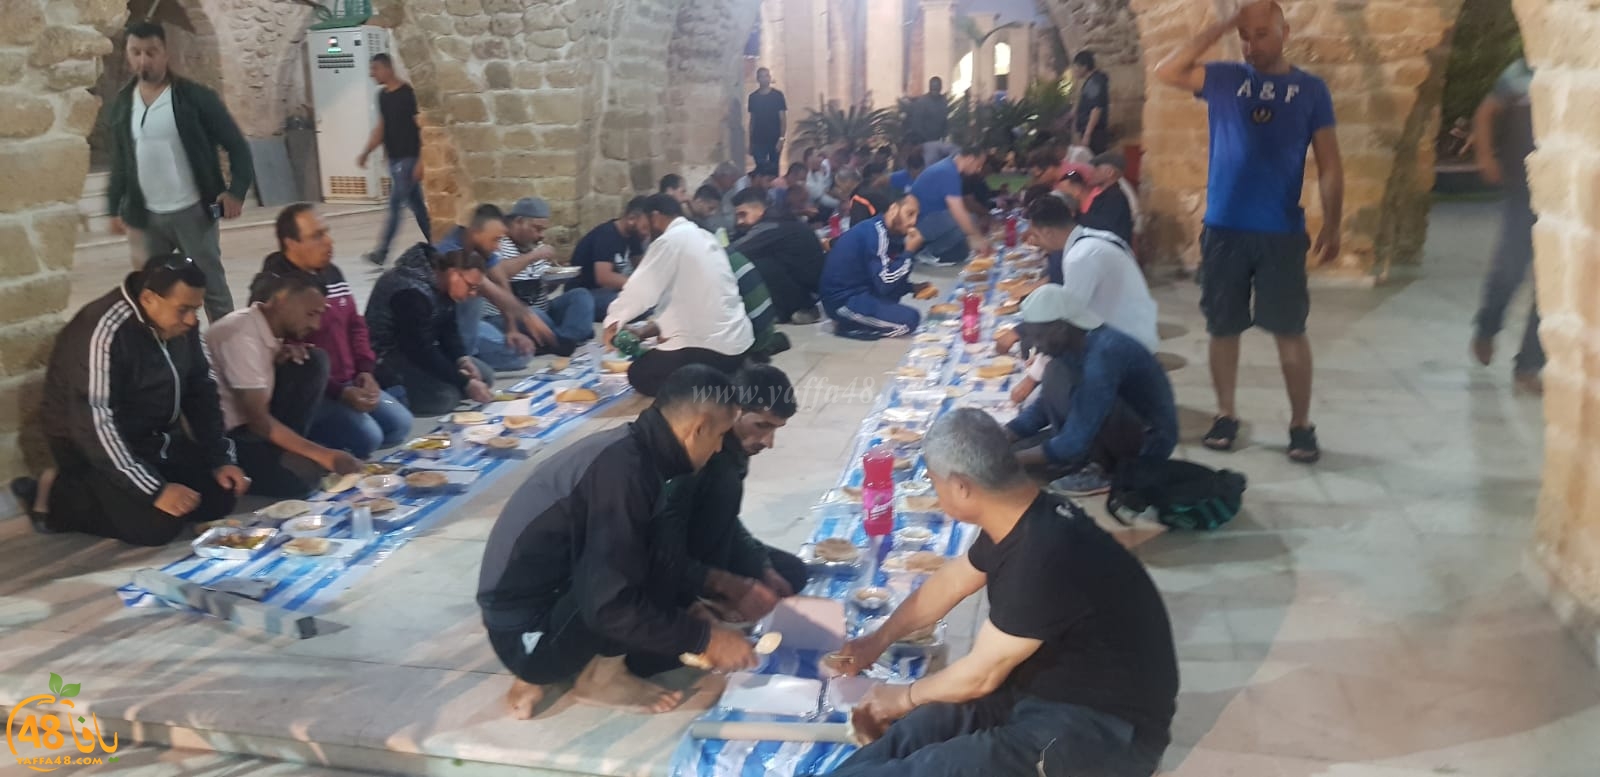  بالصور: إفطار جماعي في مسجد يافا الكبير المحمودية ضمن مشروع إفطار صائم السنوي